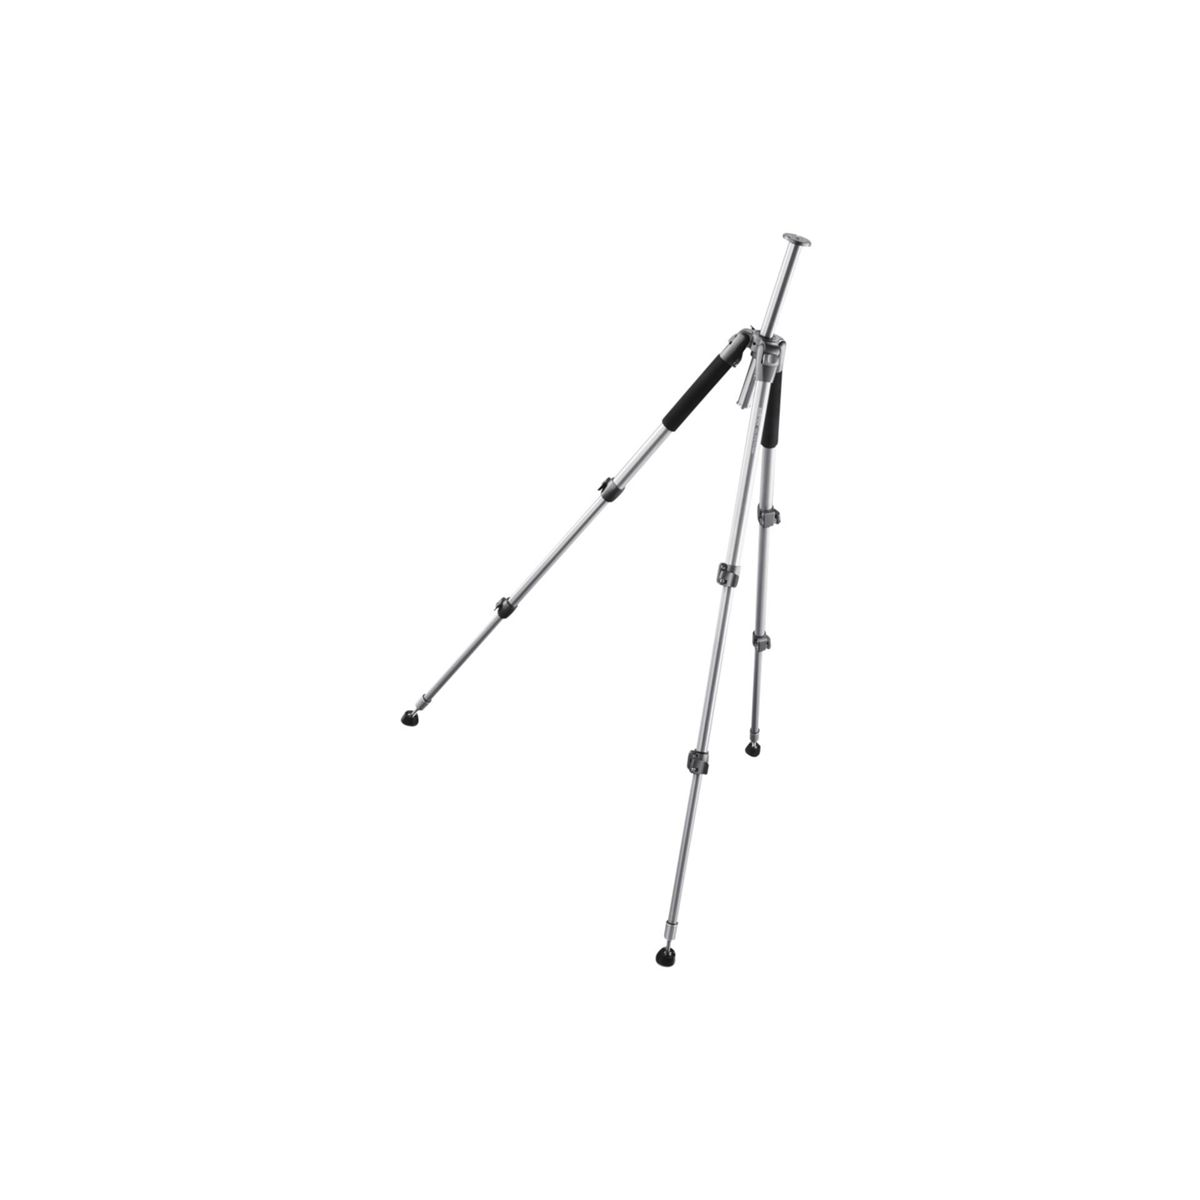 Pro-Stativ cm Höhe WALIMEX schwarz offen / Dreibeinstativ, silber, WAL-6702 bis 156,0 156cm